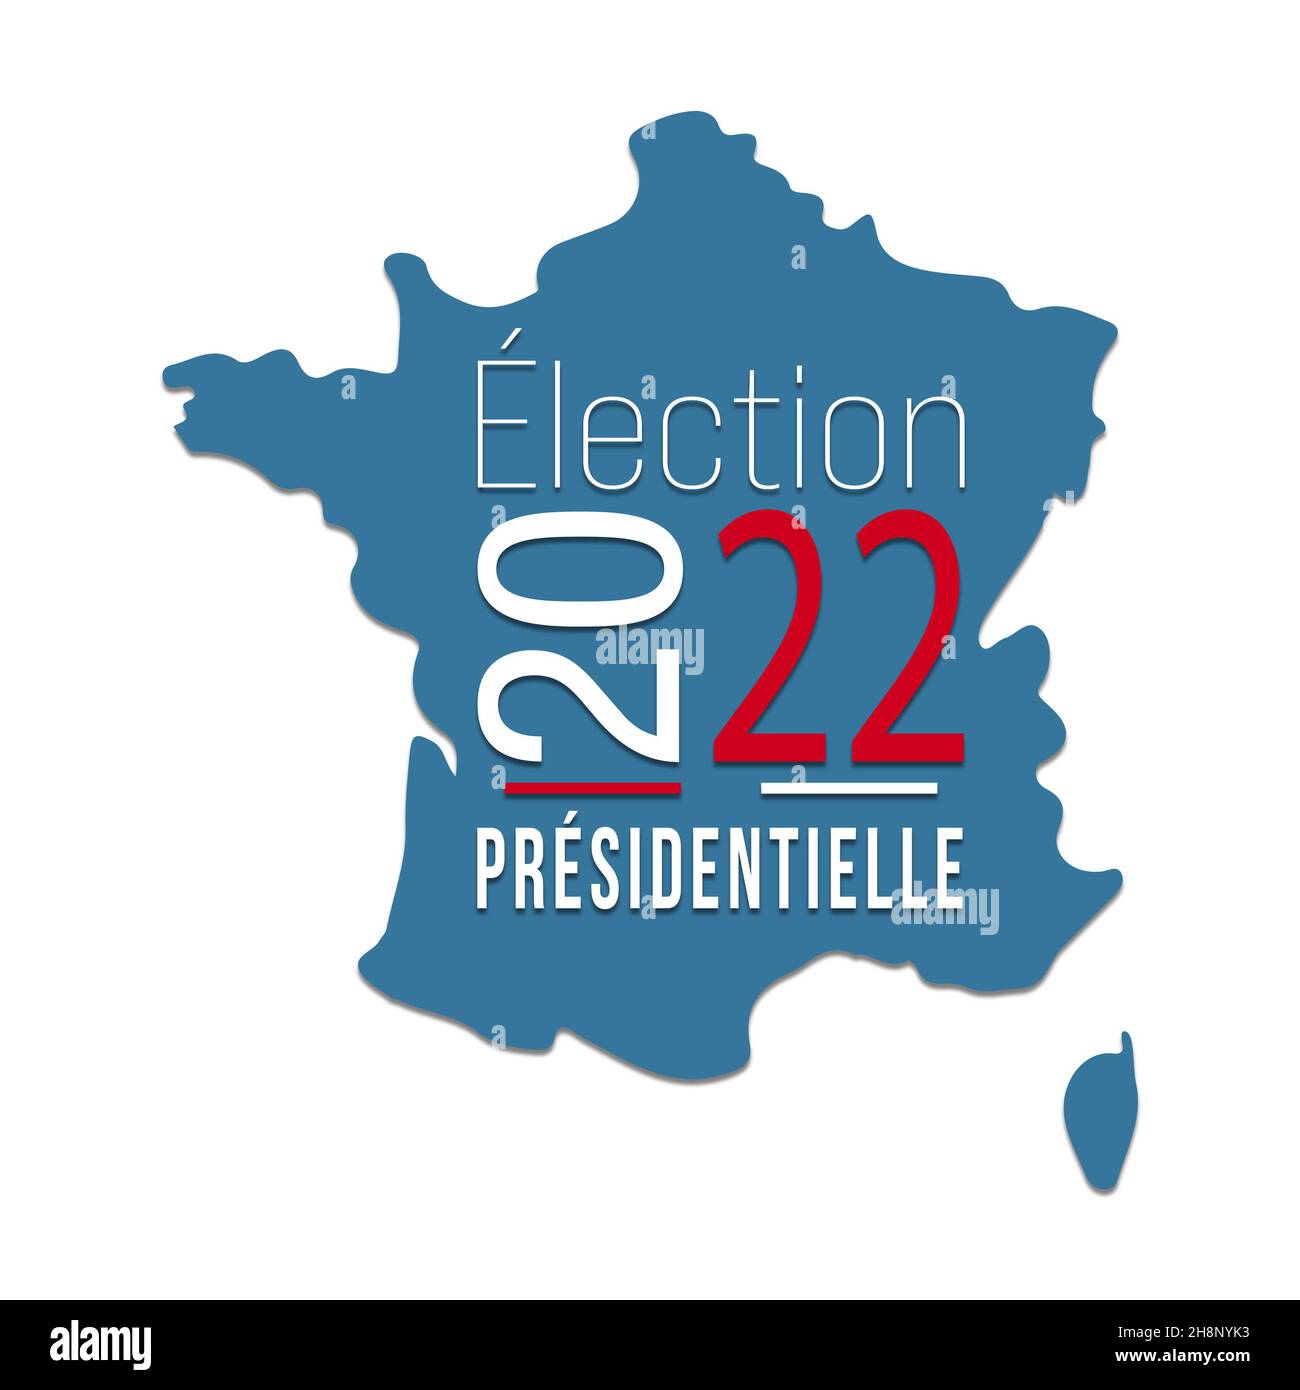 Elezioni presidenziali Francia 2022 - voto del 10 e 24 aprile 2022 - Banner Foto Stock